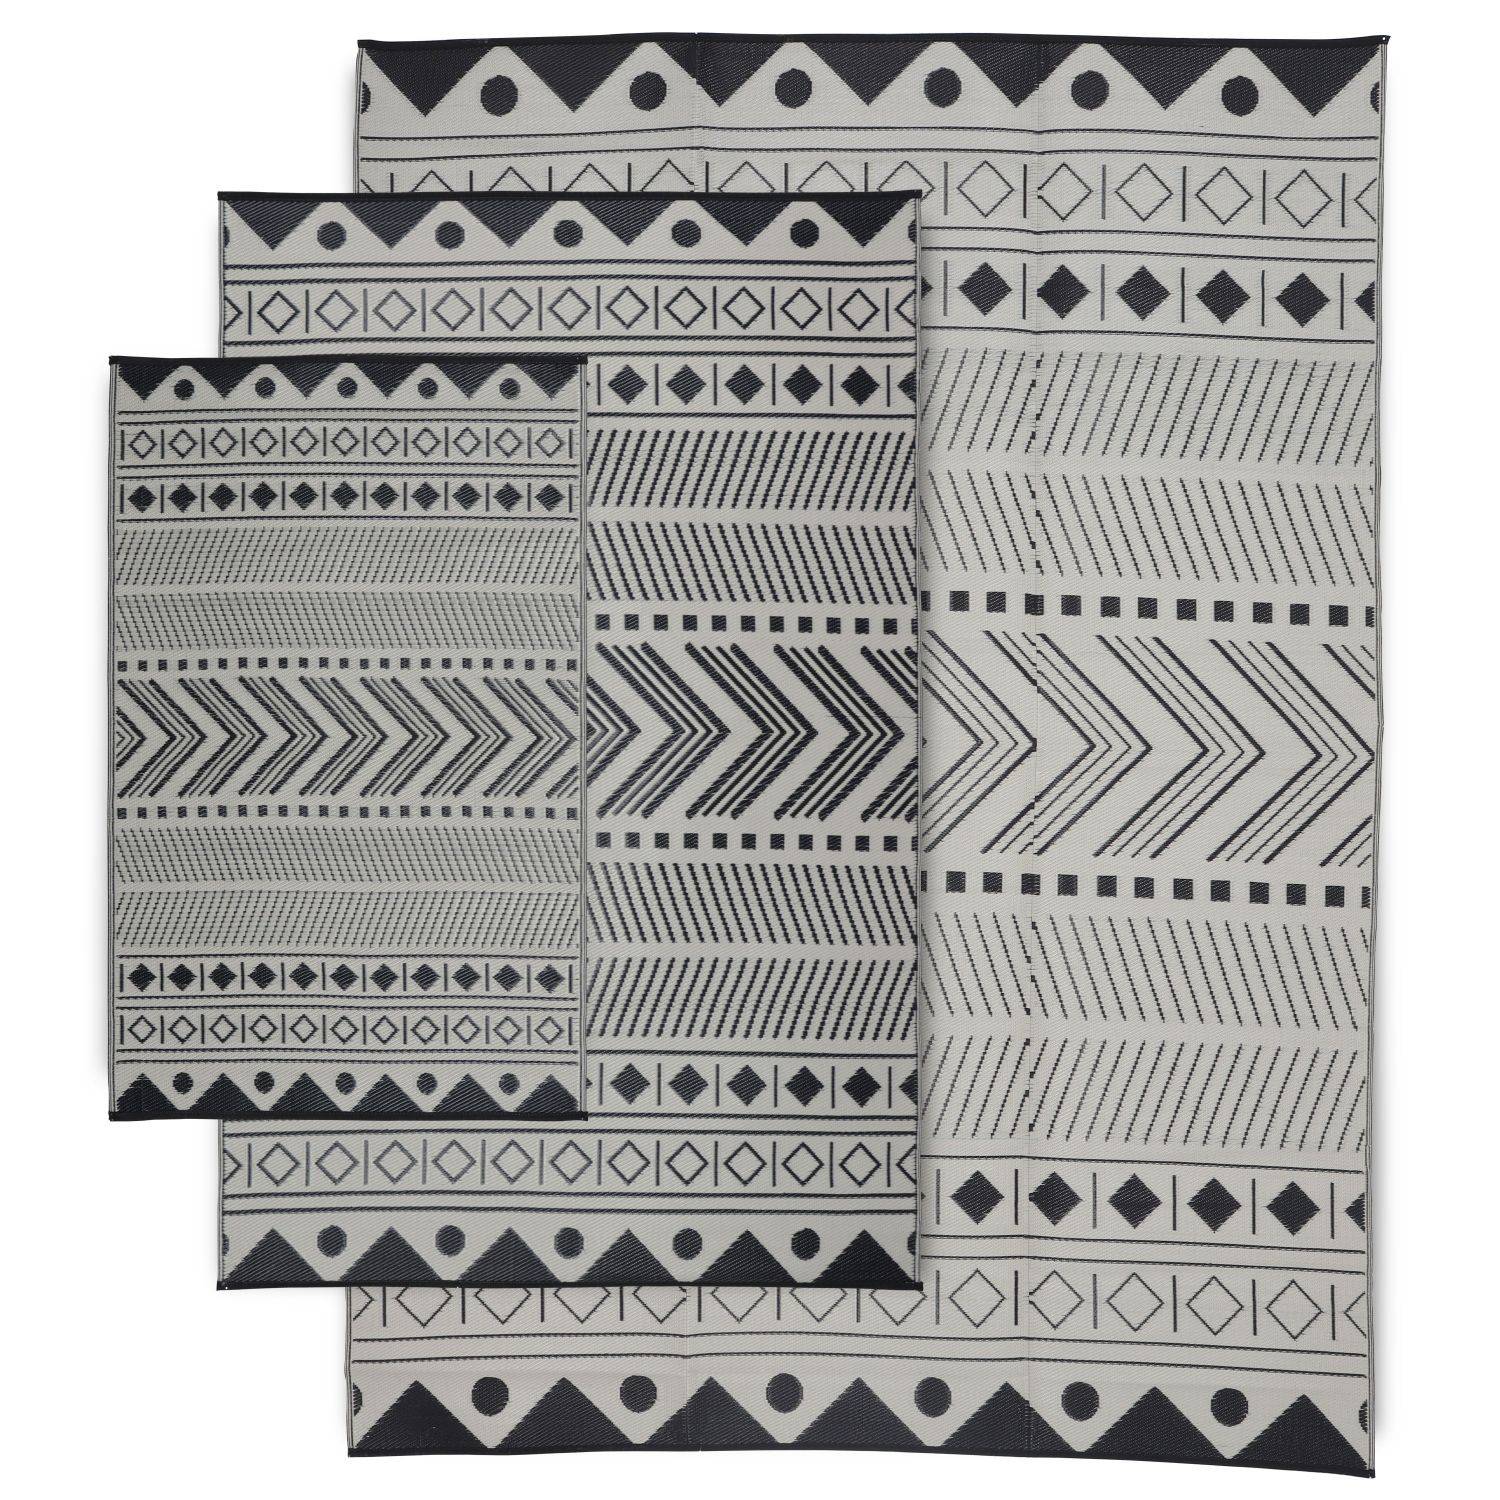 Tappeto per esterni 180x270cm BAMAKO - Rettangolare, motivo etnico nero/beige, jacquard, reversibile, interno/esterno Photo5